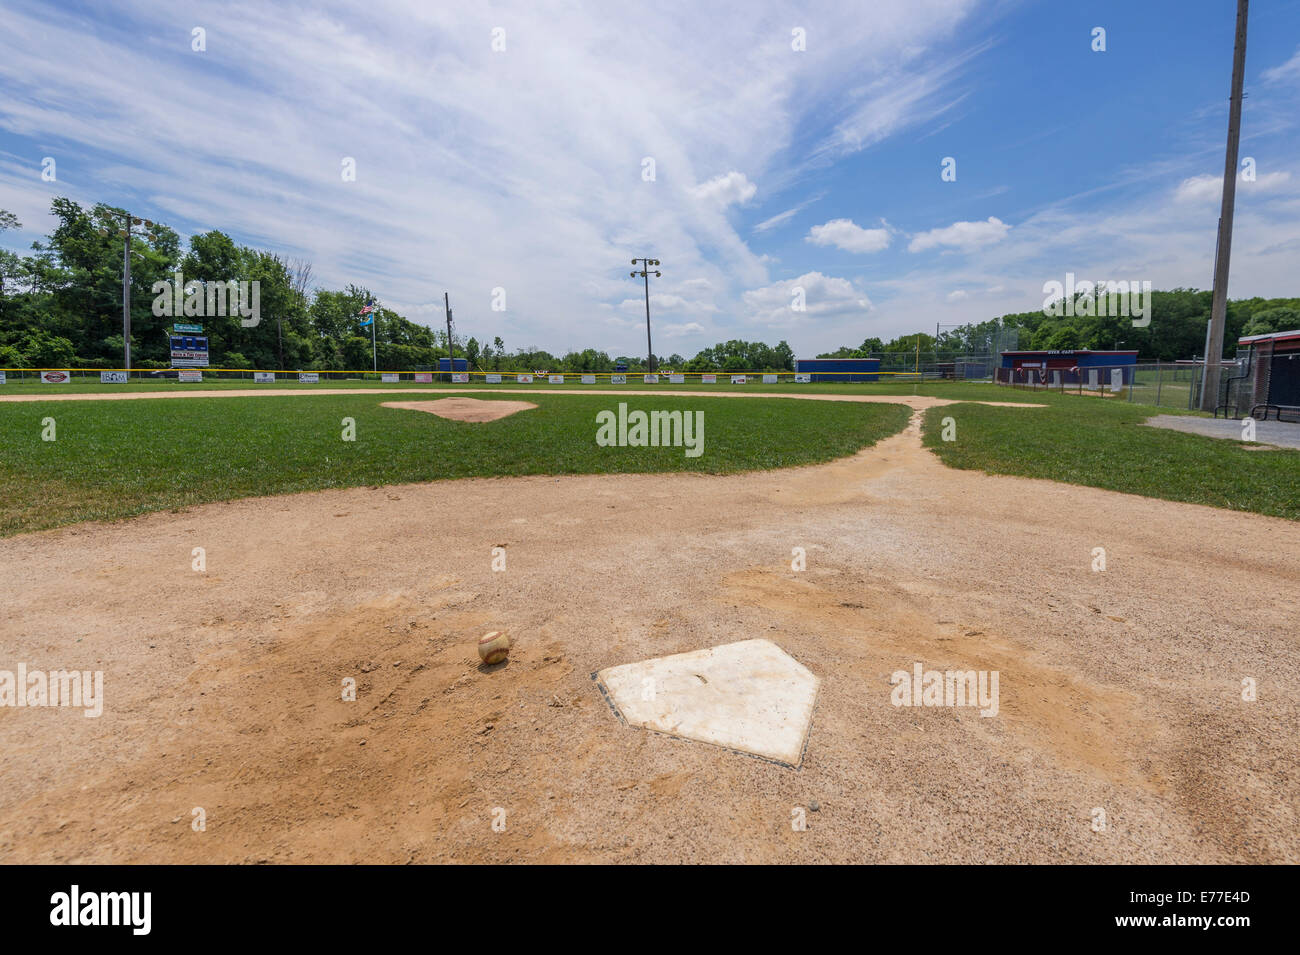 Home PLate & Baseball, Little League Baseball Field Foto Stock